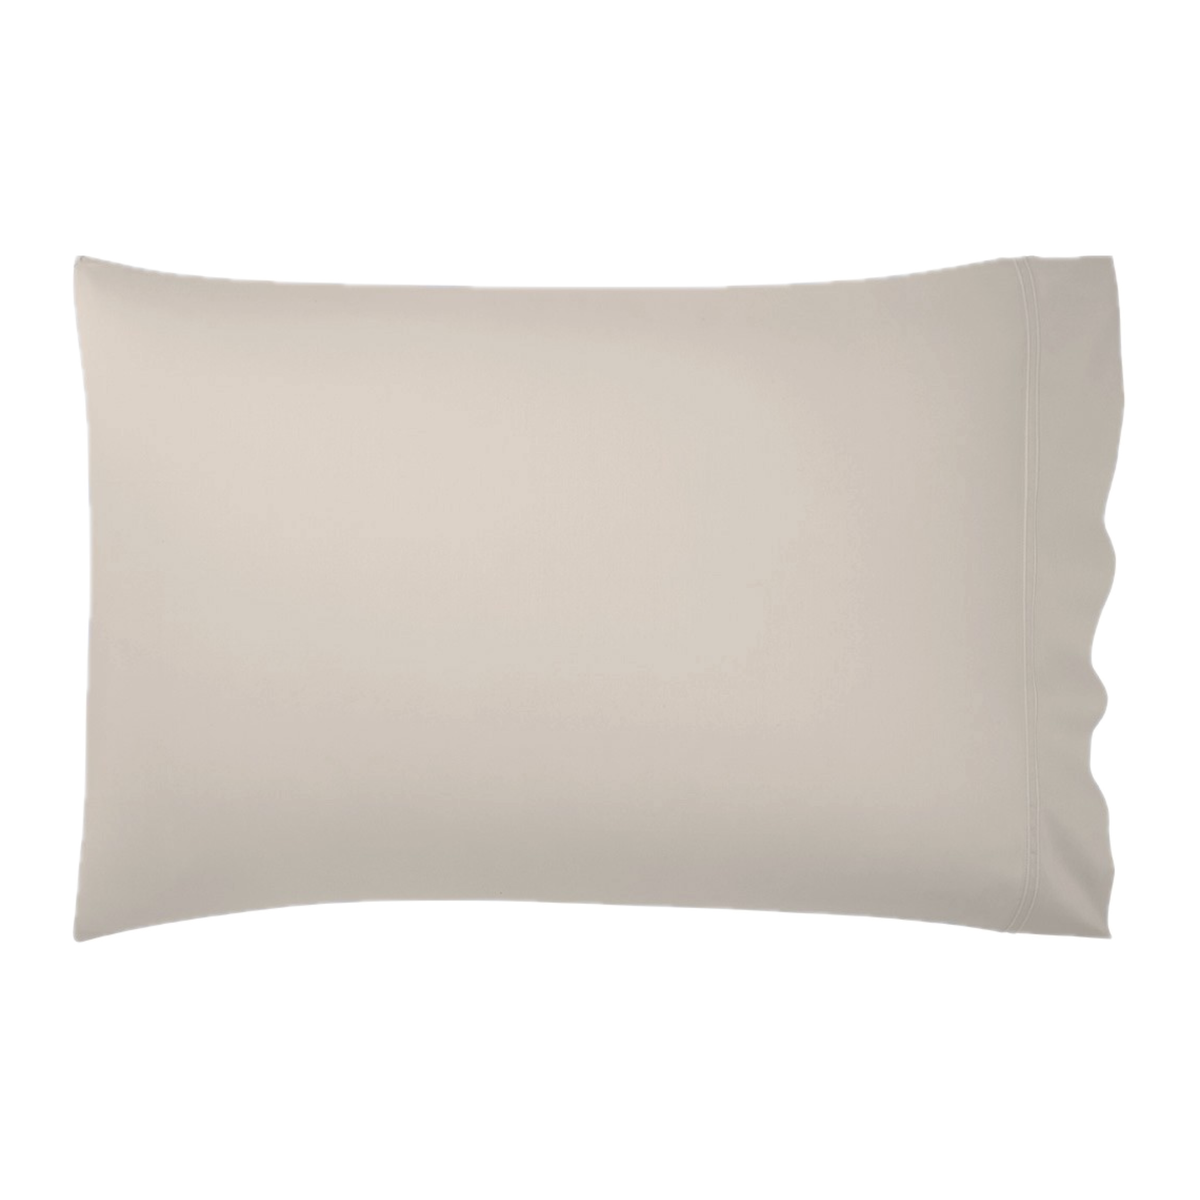 Pillowcase of Yves Delorme Tioman Bedding